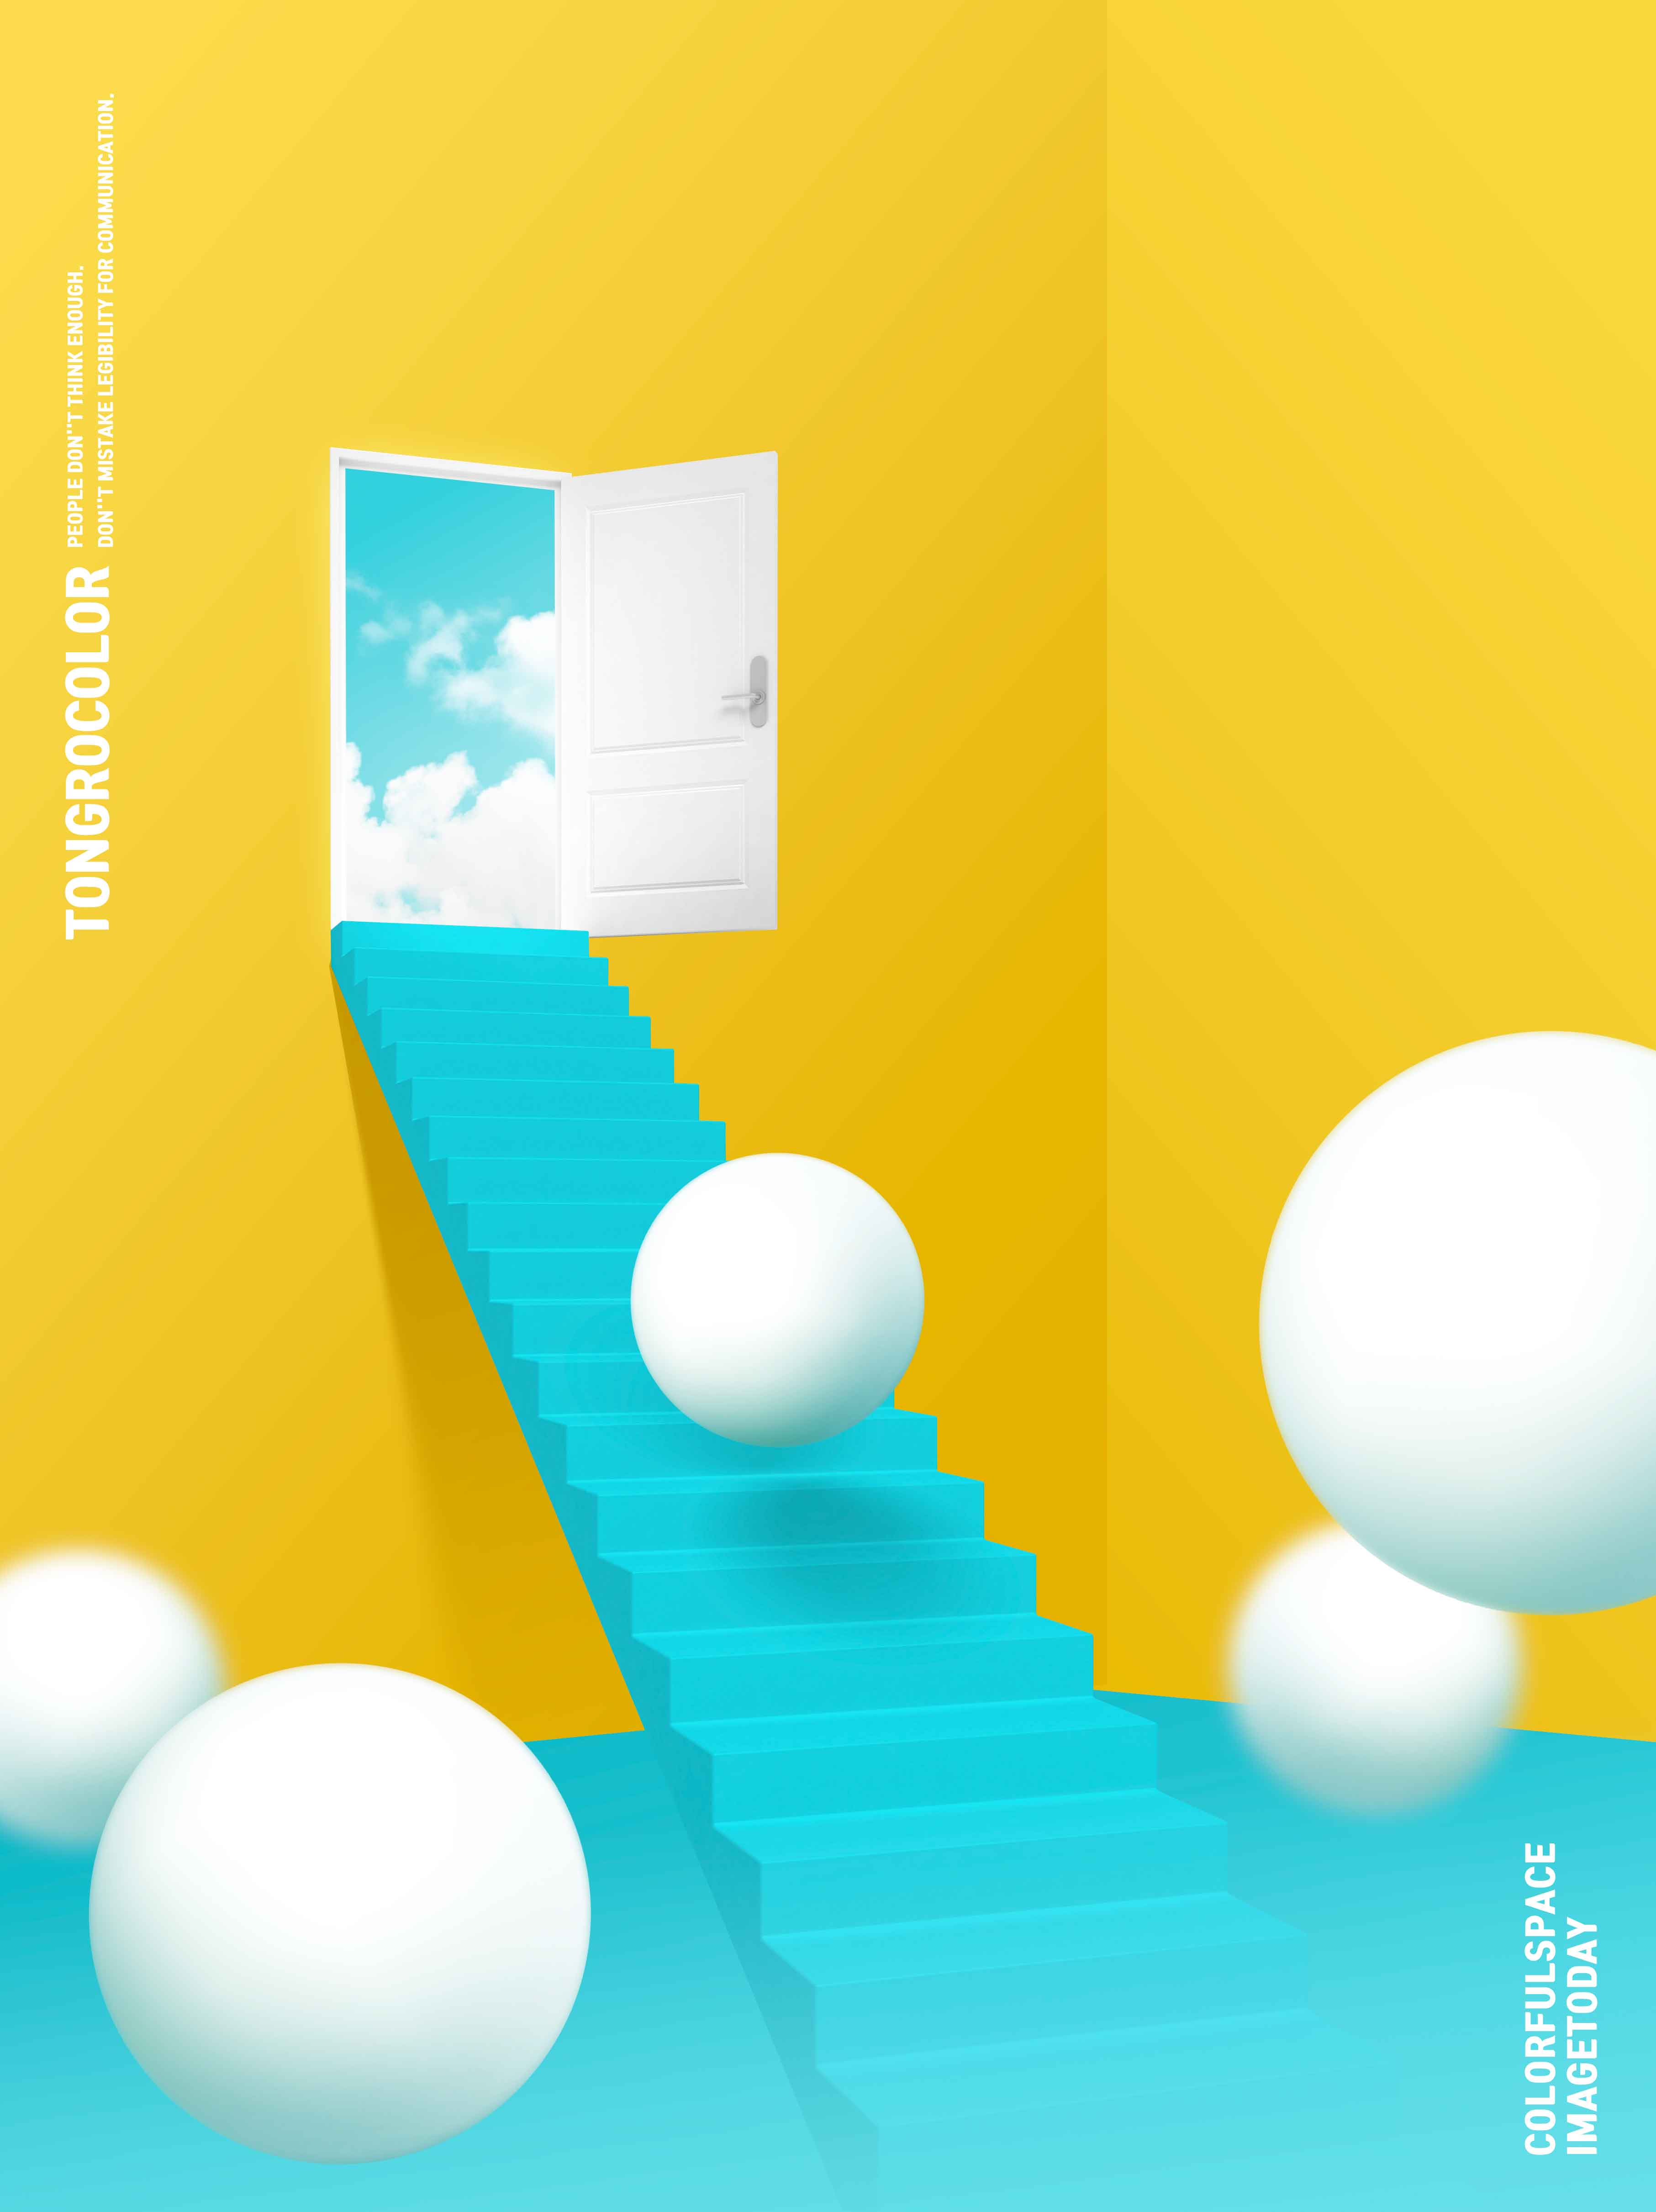 天堂阶梯抽象梦幻空间海报PSD素材16图库精选psd素材插图